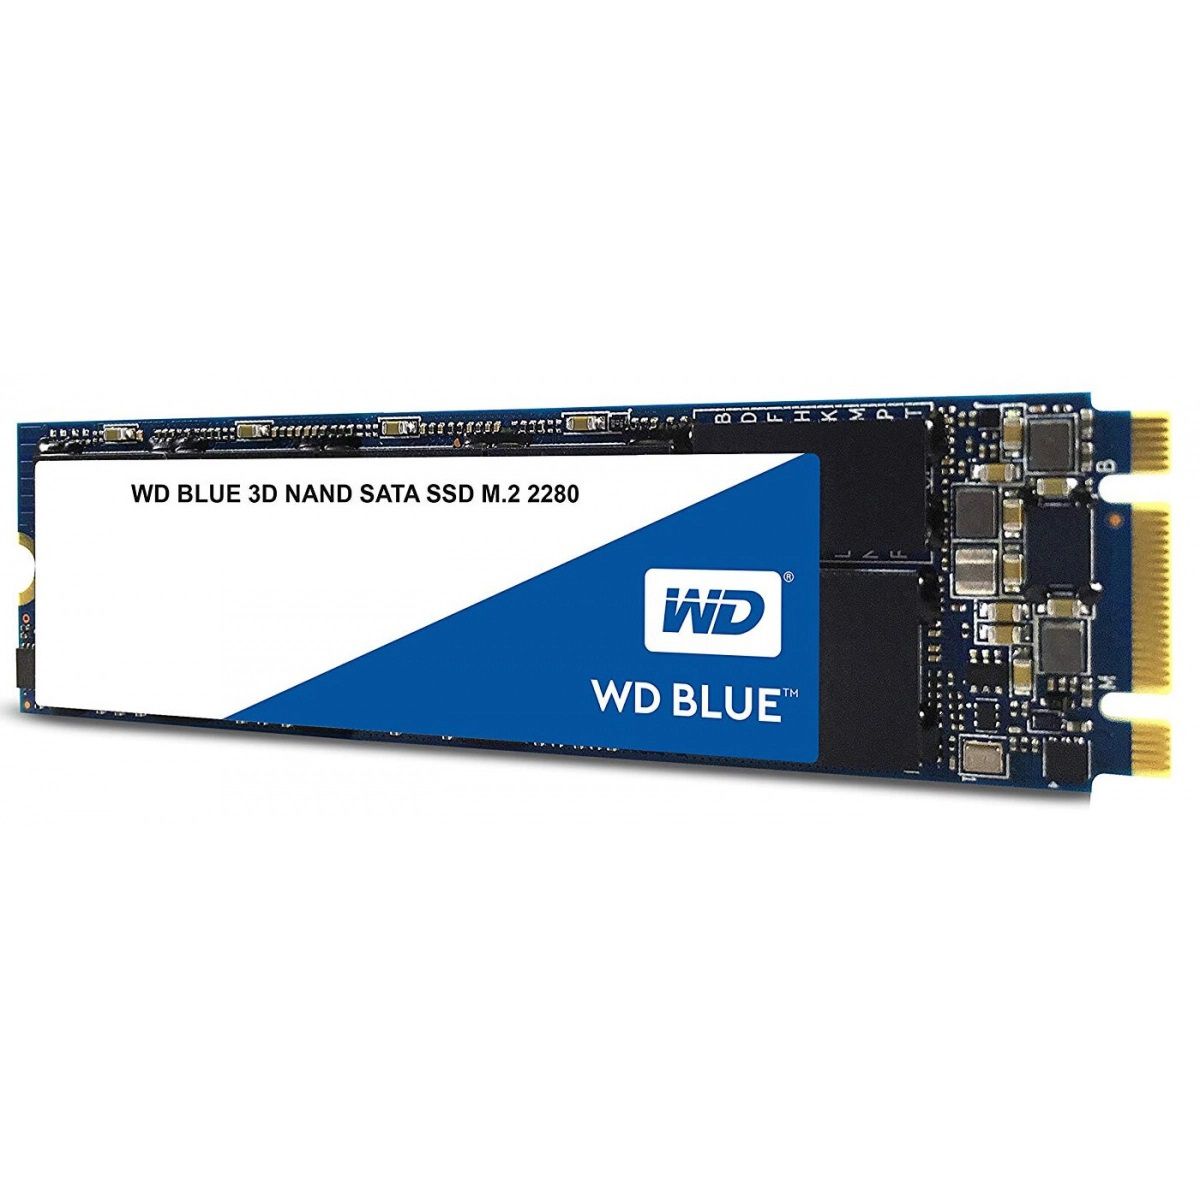 SSD WD Blue, 250GB, M.2 2280, Sata, Leitura 550MB/s, Gravação 525MB/s - WDS250G2B0B